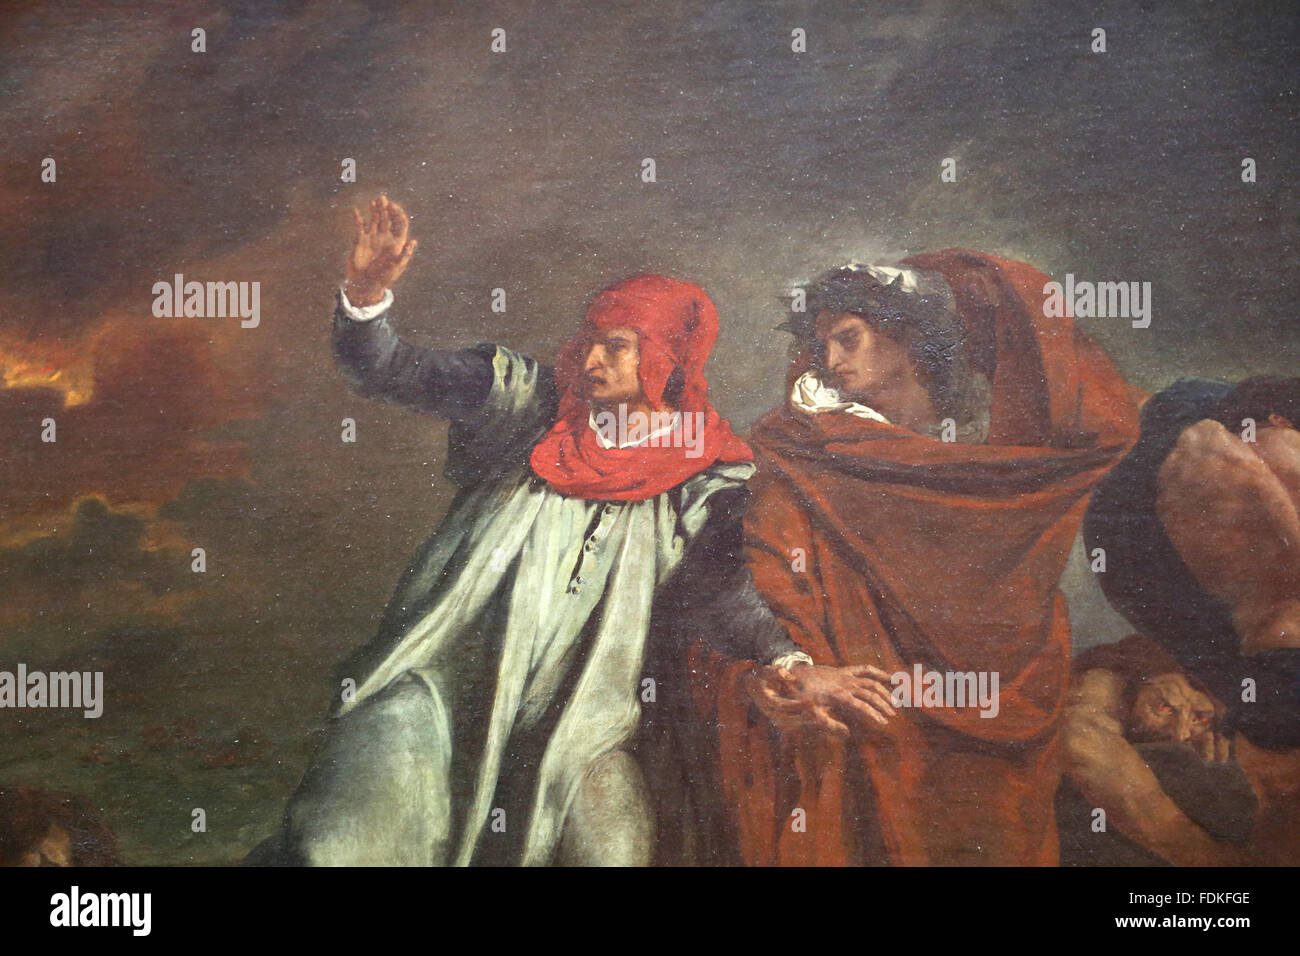 La barca di Dante o Dante e Virgilio in un inferno di Eugene Delacroix (1798 - 1863), 1822. Olio su tela. Il romanticismo. Museo del Louvre Foto Stock